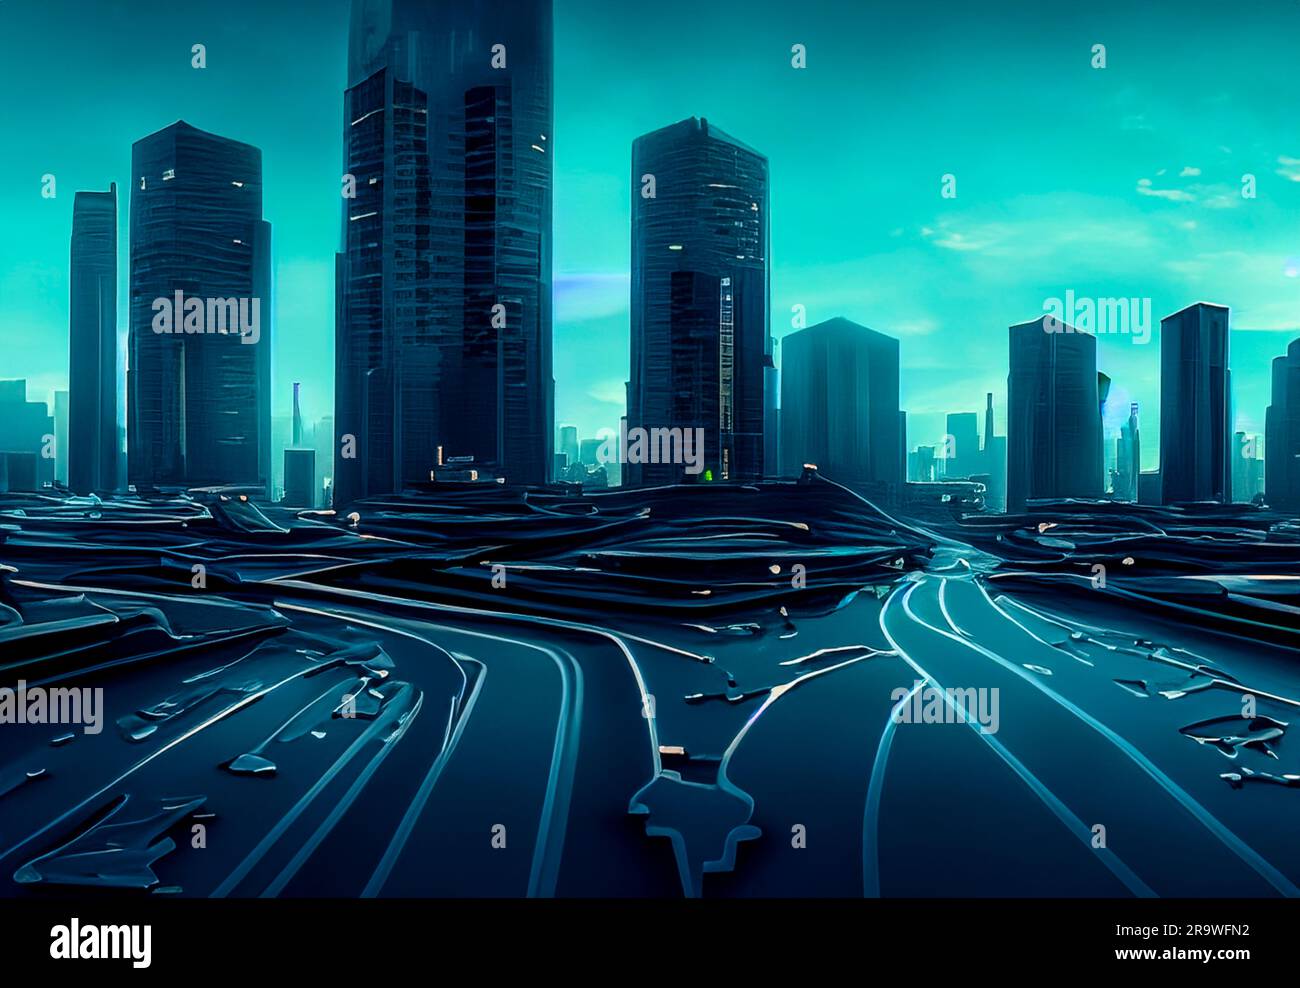 Beautiful Cyberpunk Cityscape, Glitchy Animation style